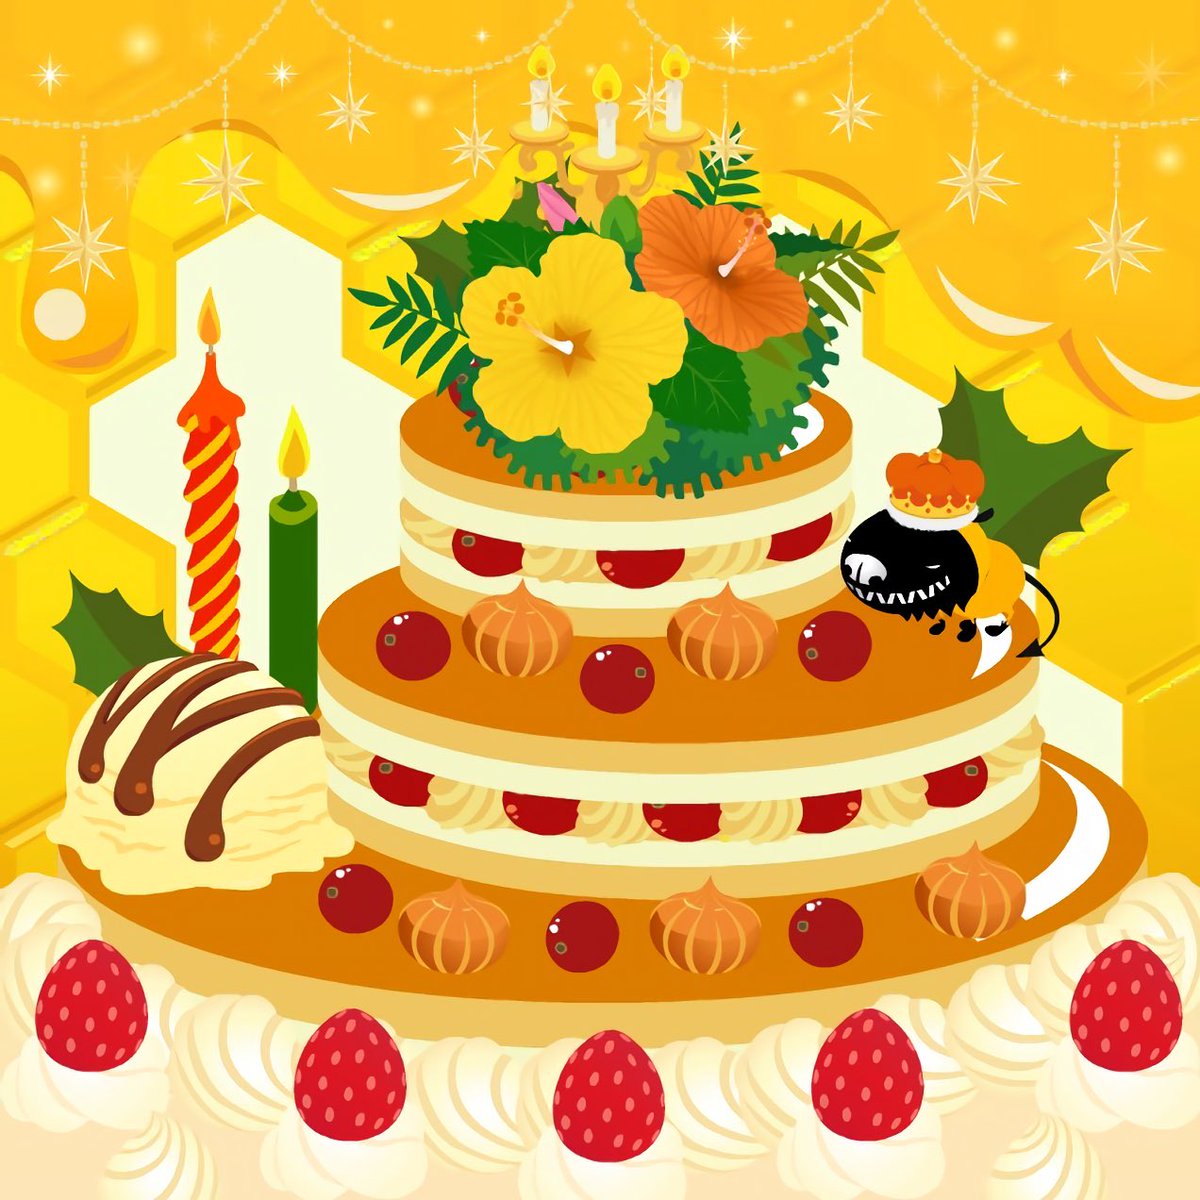 さぼてん うばたま A Twitter オレンジケーキ オレンジ色のクリームに見える部分はアイテムの玉ねぎ うちの子の誕生日には毎年いろんな ケーキのレイアウトでお祝いしてた リヴリー島図鑑 リヴリー